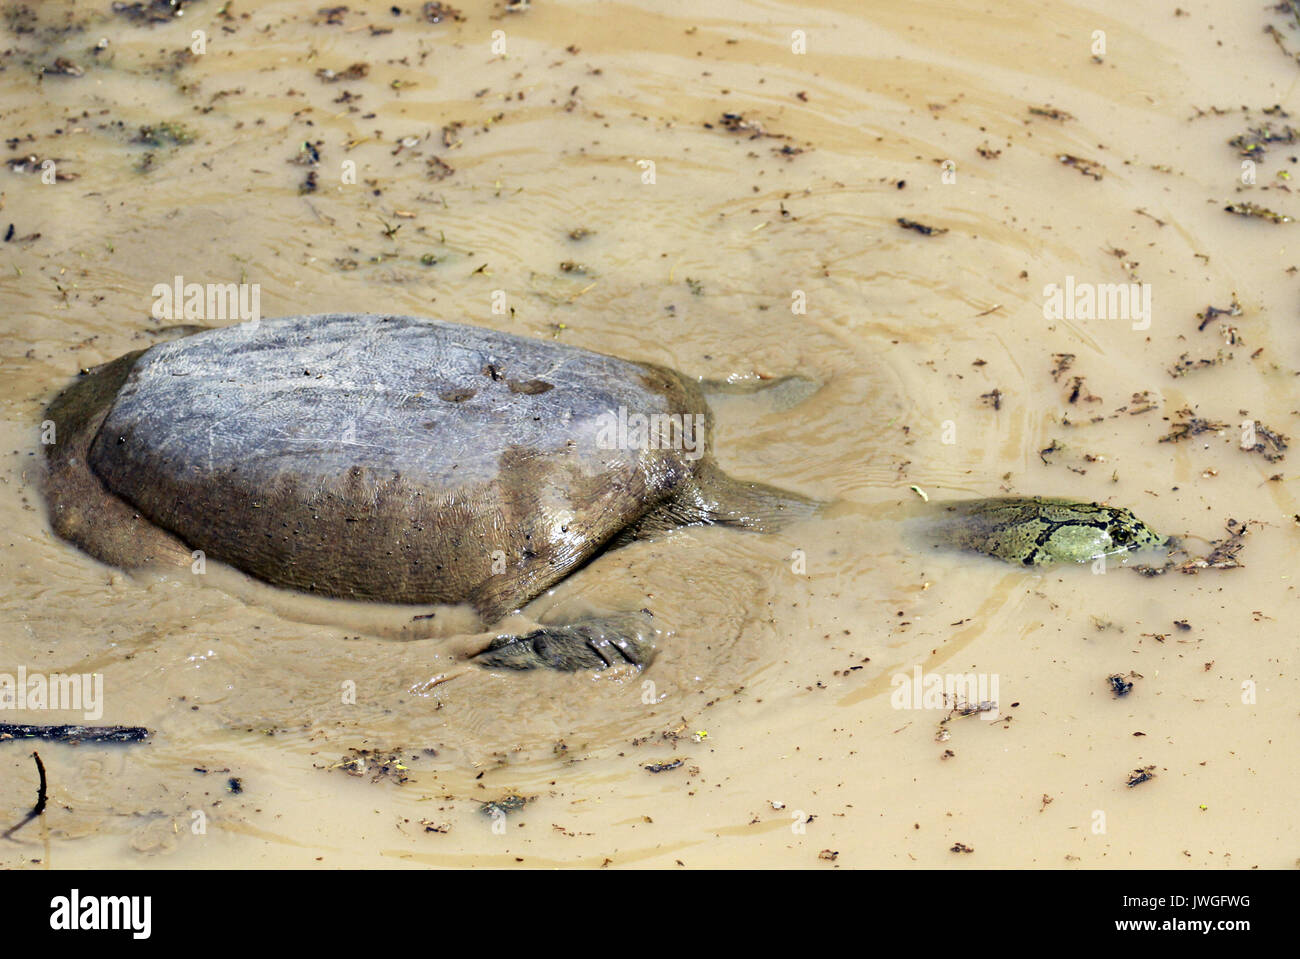 Indian flapshell turtle, Keoladeo National Park, India Stock Photo